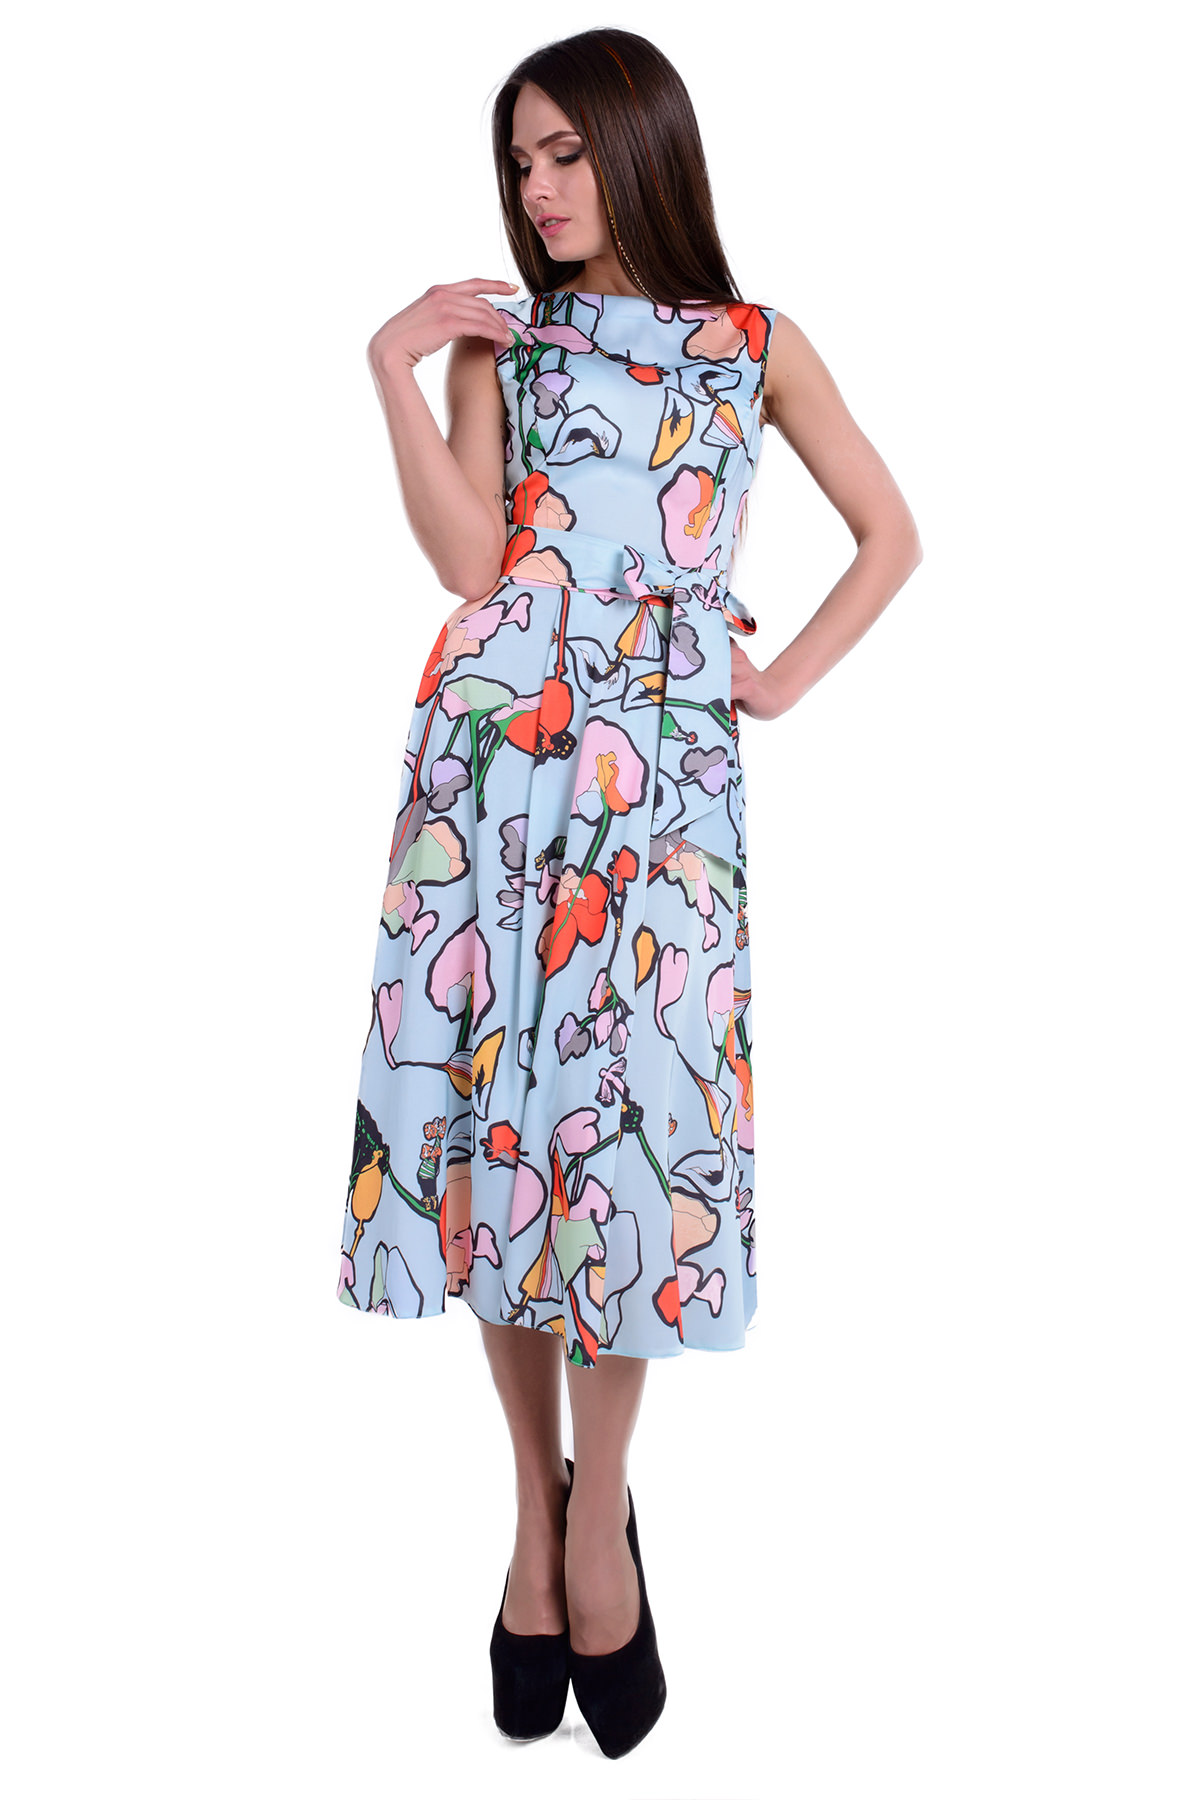 Женская одежда от производителя Modus Платье Рубина лайт принт атлас шифон